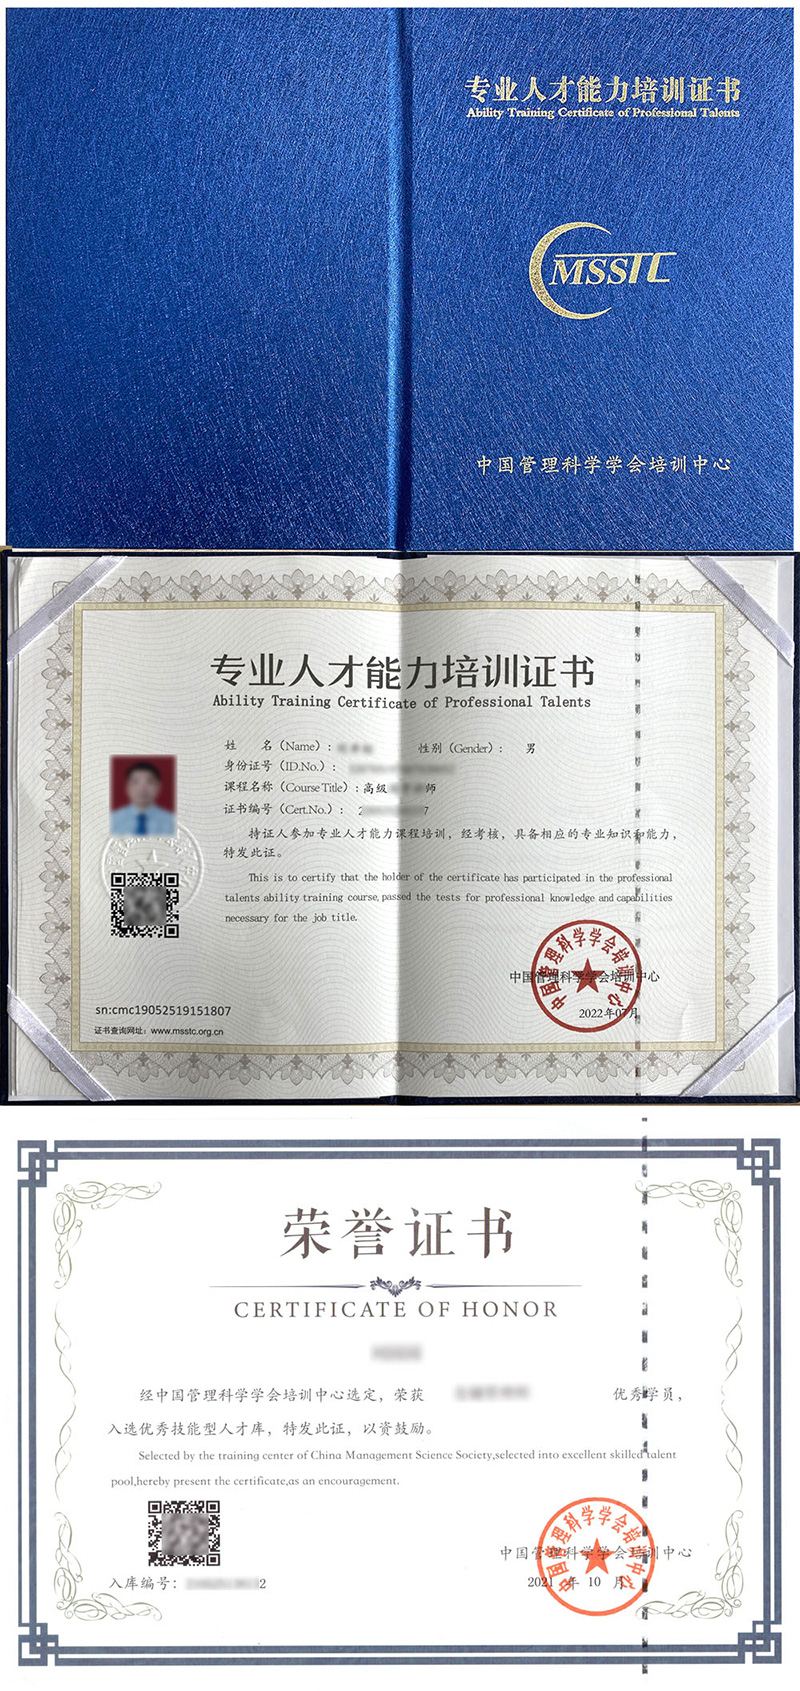 中国管理科学学会培训中心 专业人才能力培训证书 中医保健师证证书样本